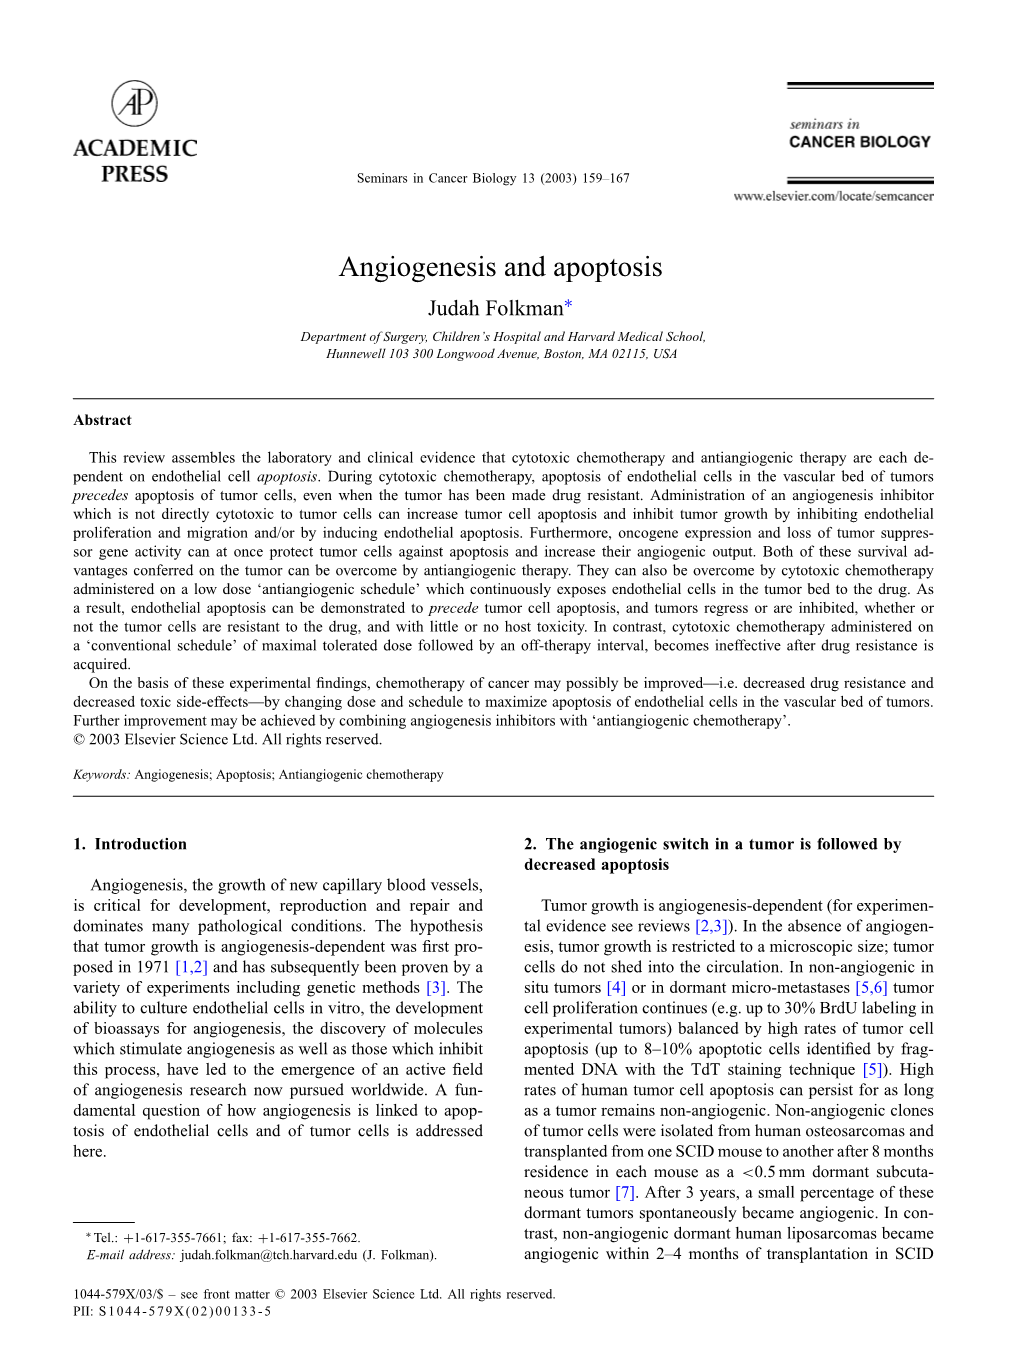 Angiogenesis and Apoptosis